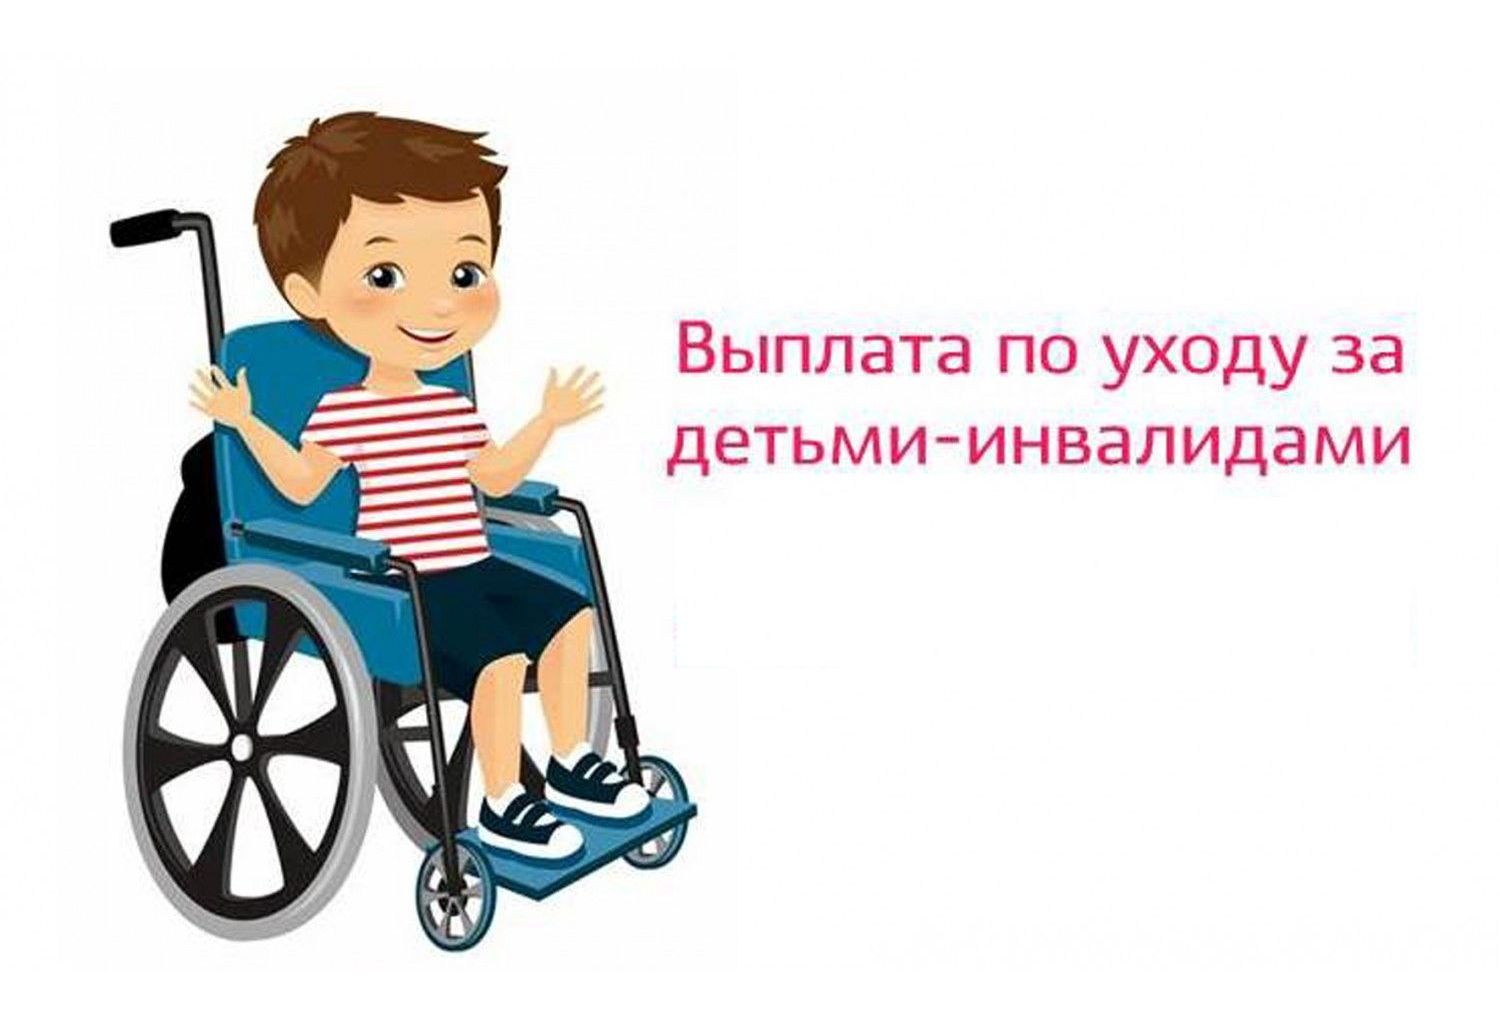 Соцфонд с начала года обеспечил техническими средствами реабилитации 13,6 тыс. детей с инвалидностью.